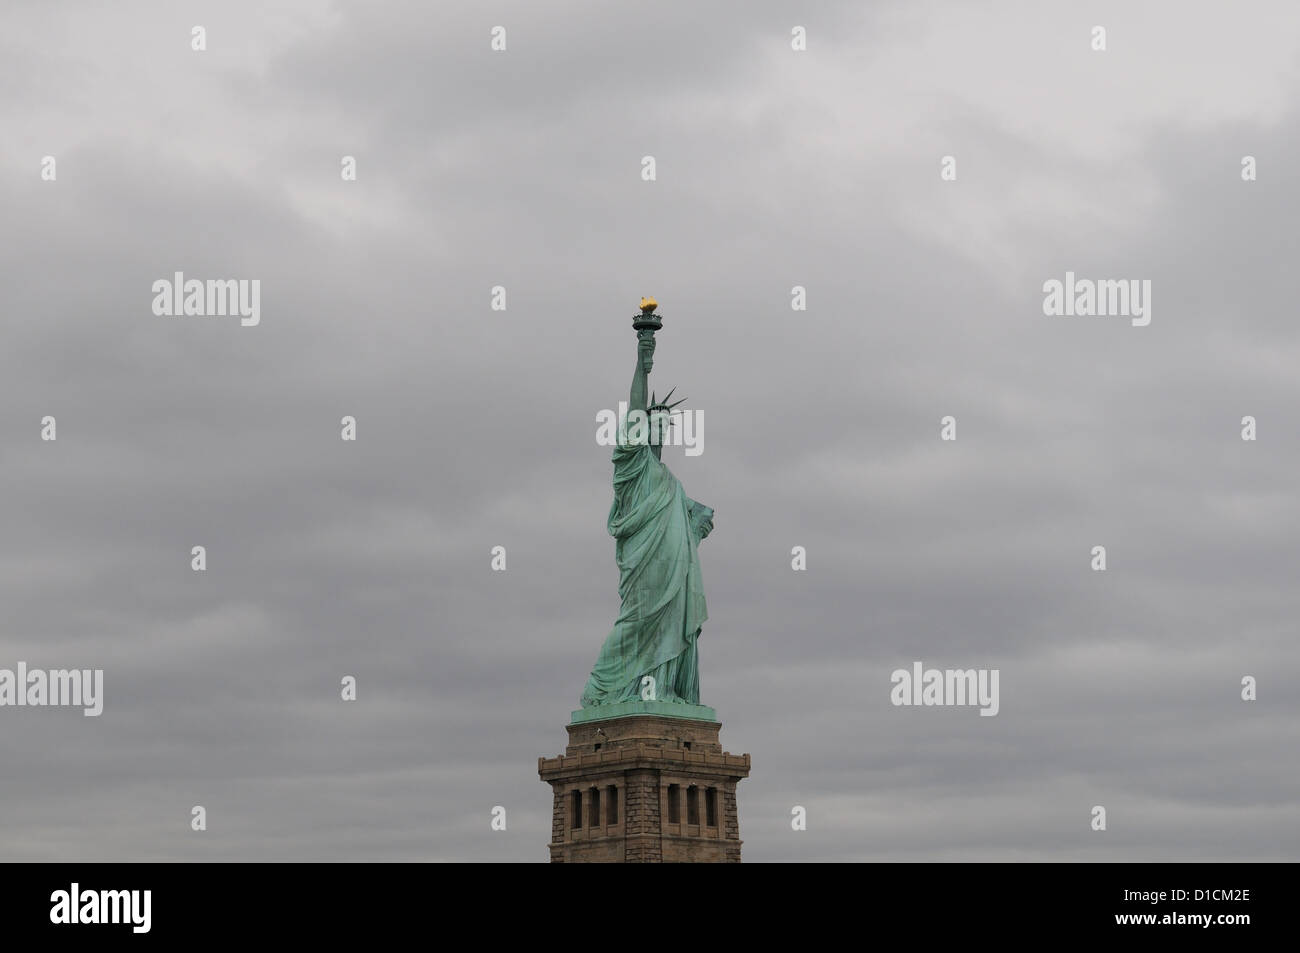 Un giorno prima di sabbia di uragano ha colpito la città di New York, la Statua della Libertà si fermò contro un cielo tempestoso. La statua è stata integre. Foto Stock